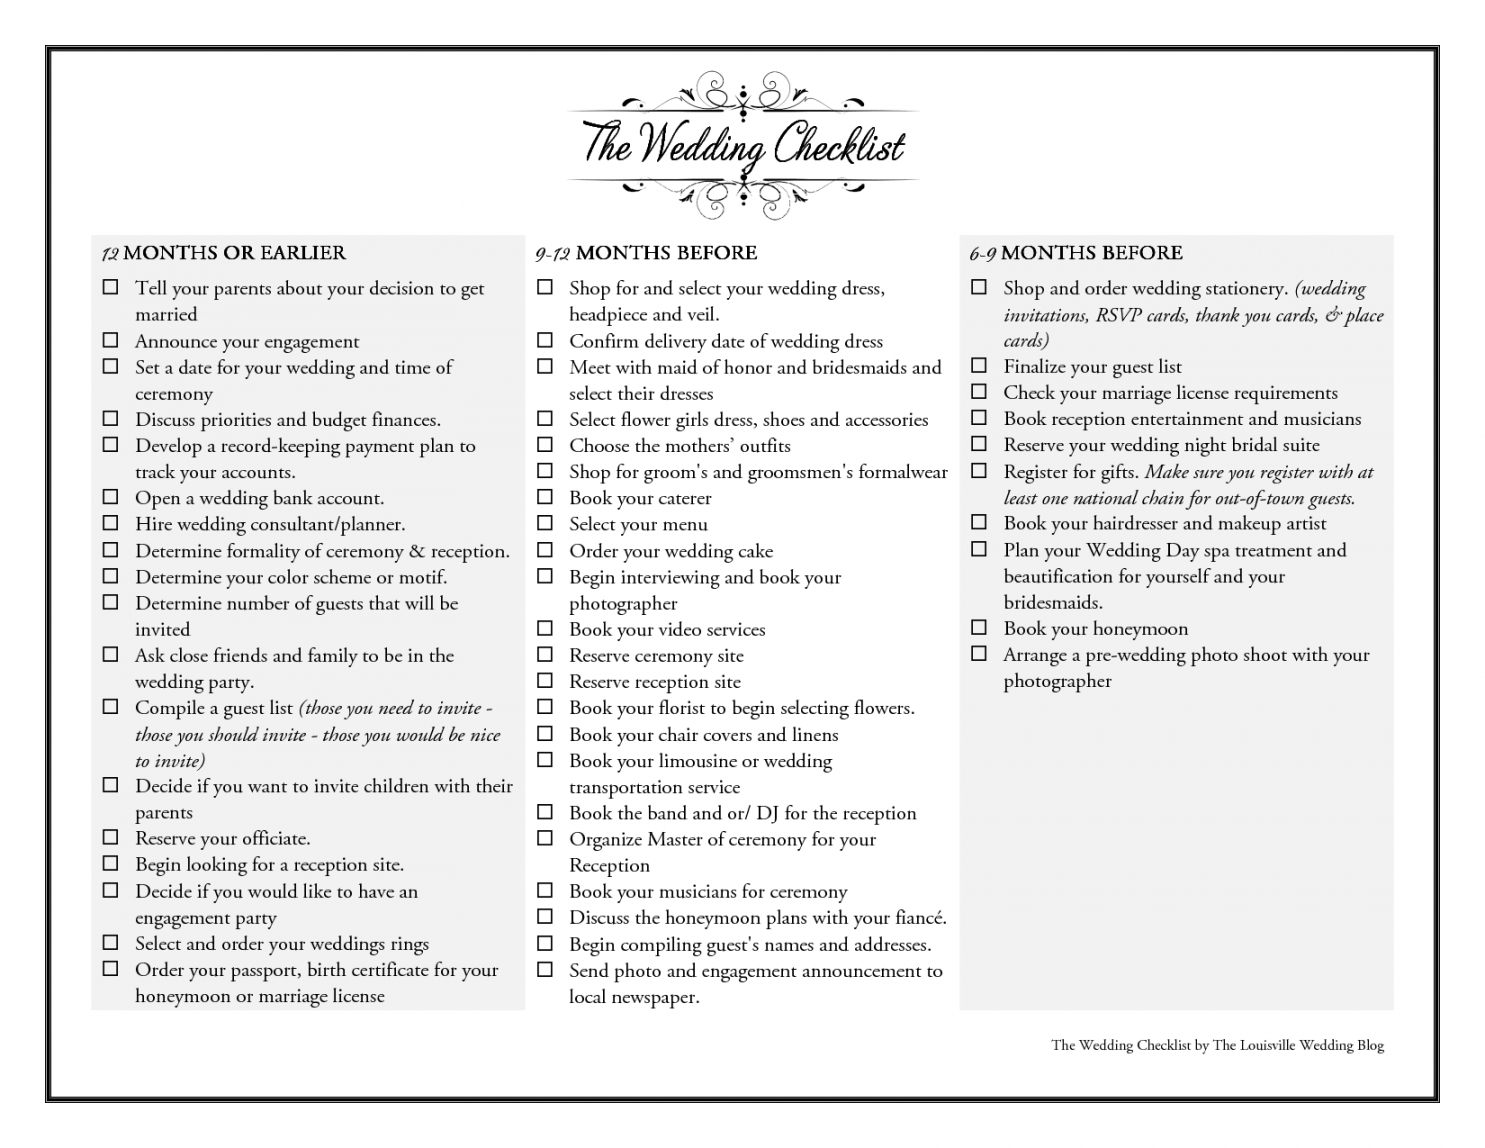 free wedding checklist 12 months  our wedding! in 2019  wedding wedding timeline checklist template samples